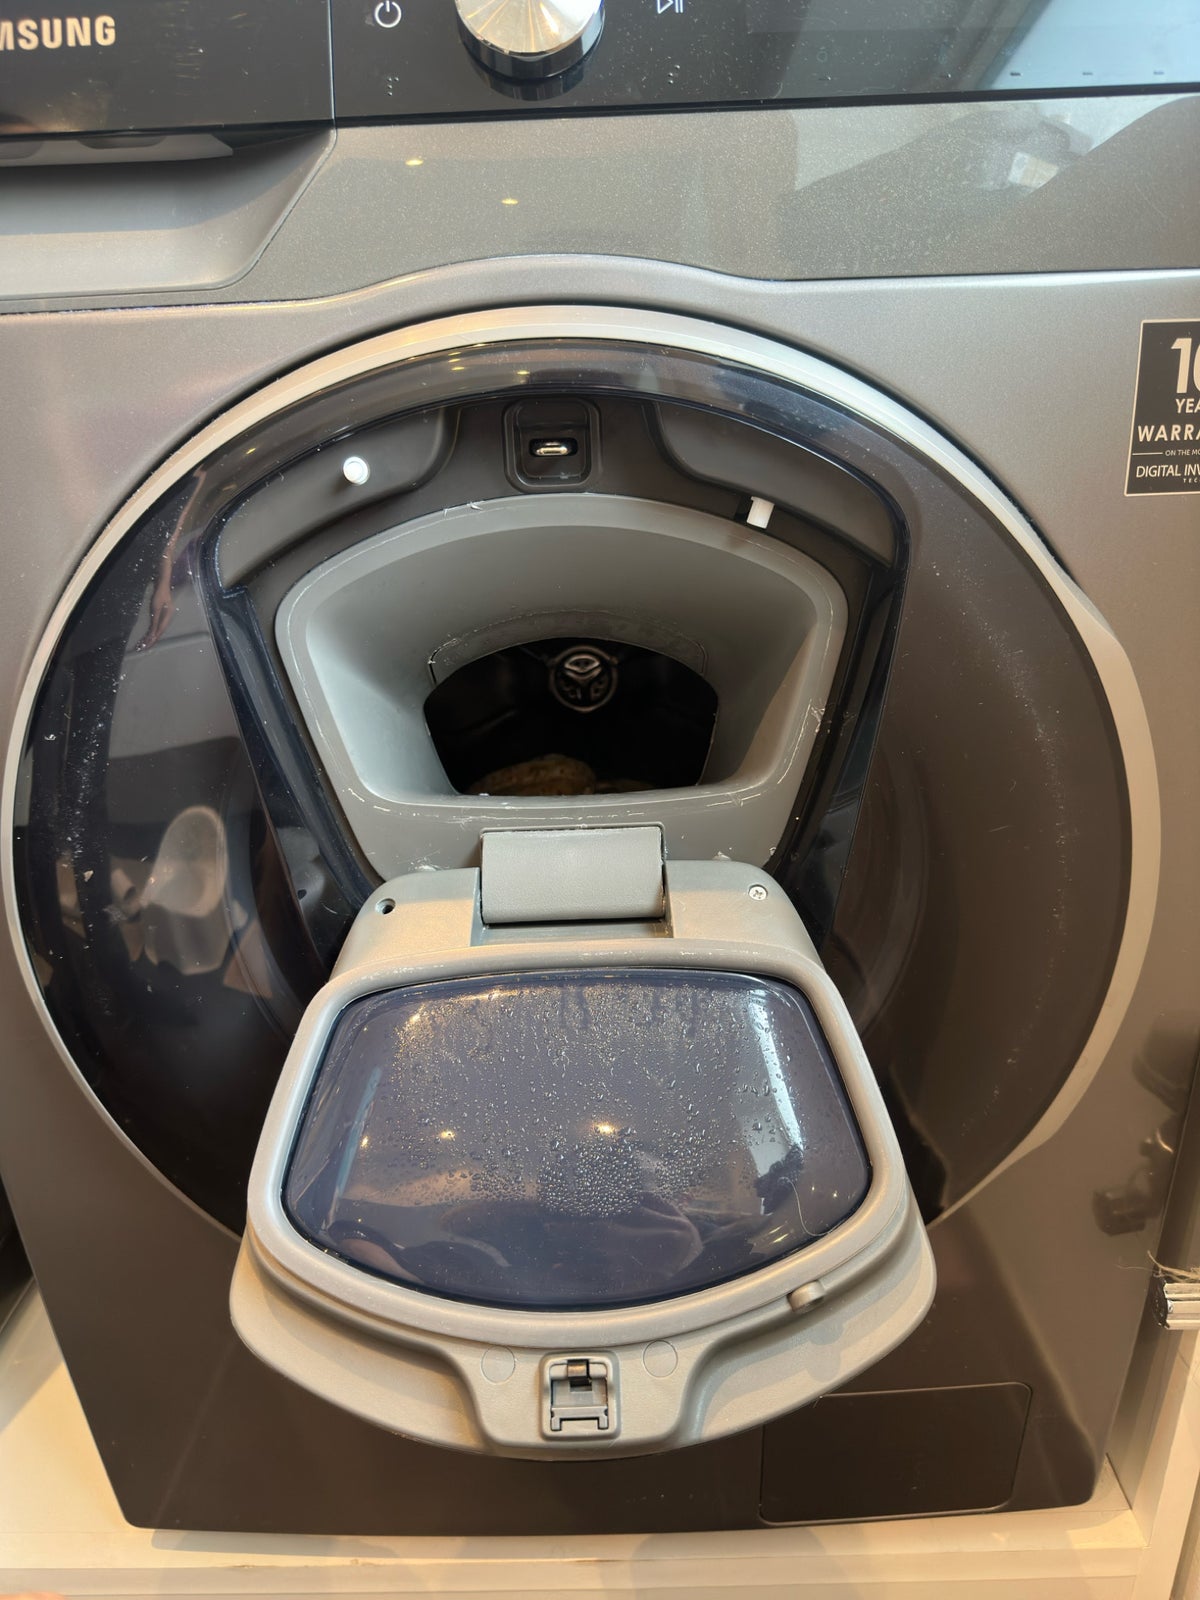 Samsung vaskemaskine, DV90T620LN, frontbetjent